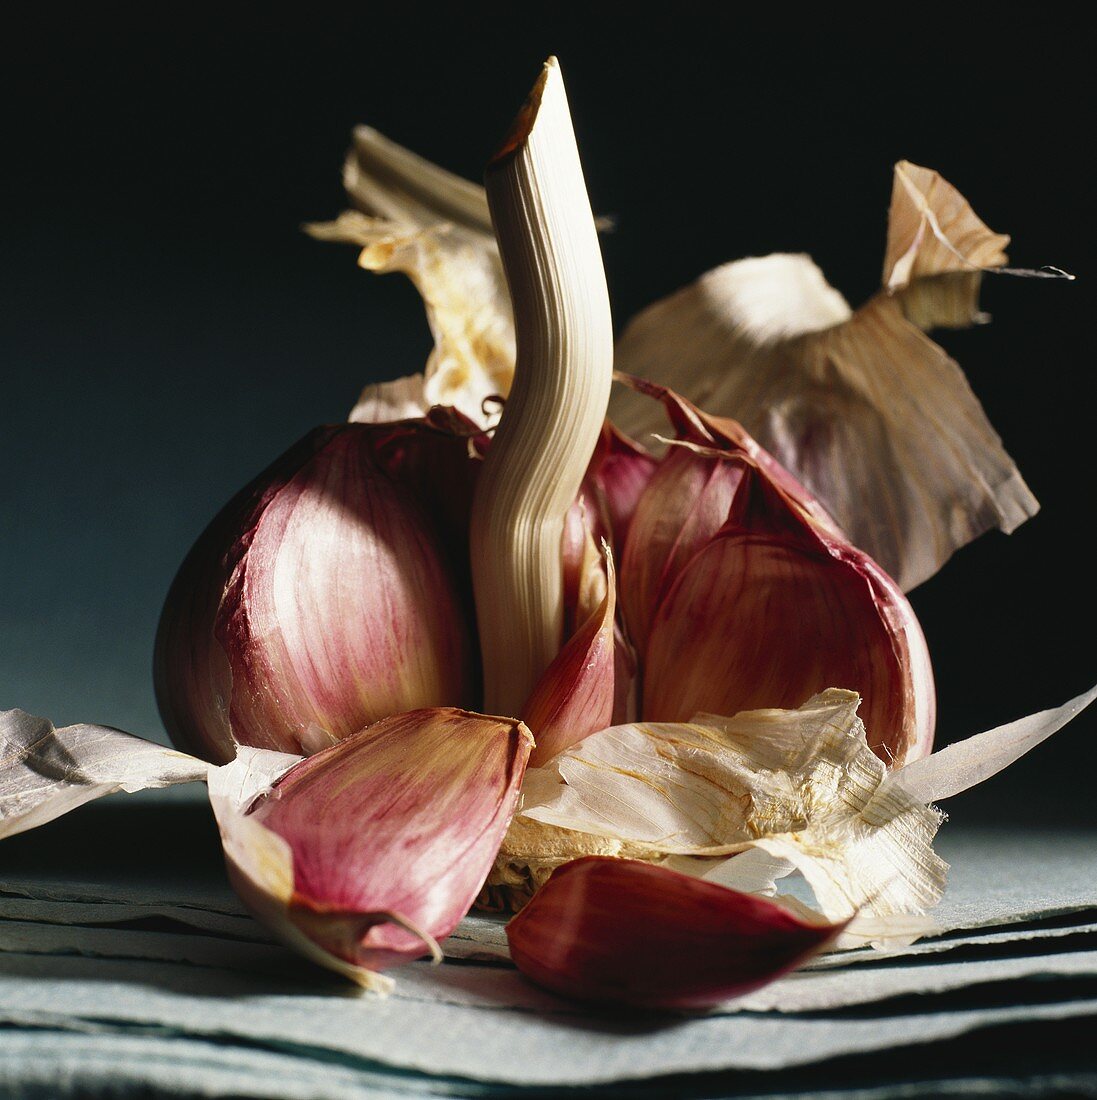 A peeled garlic bulb